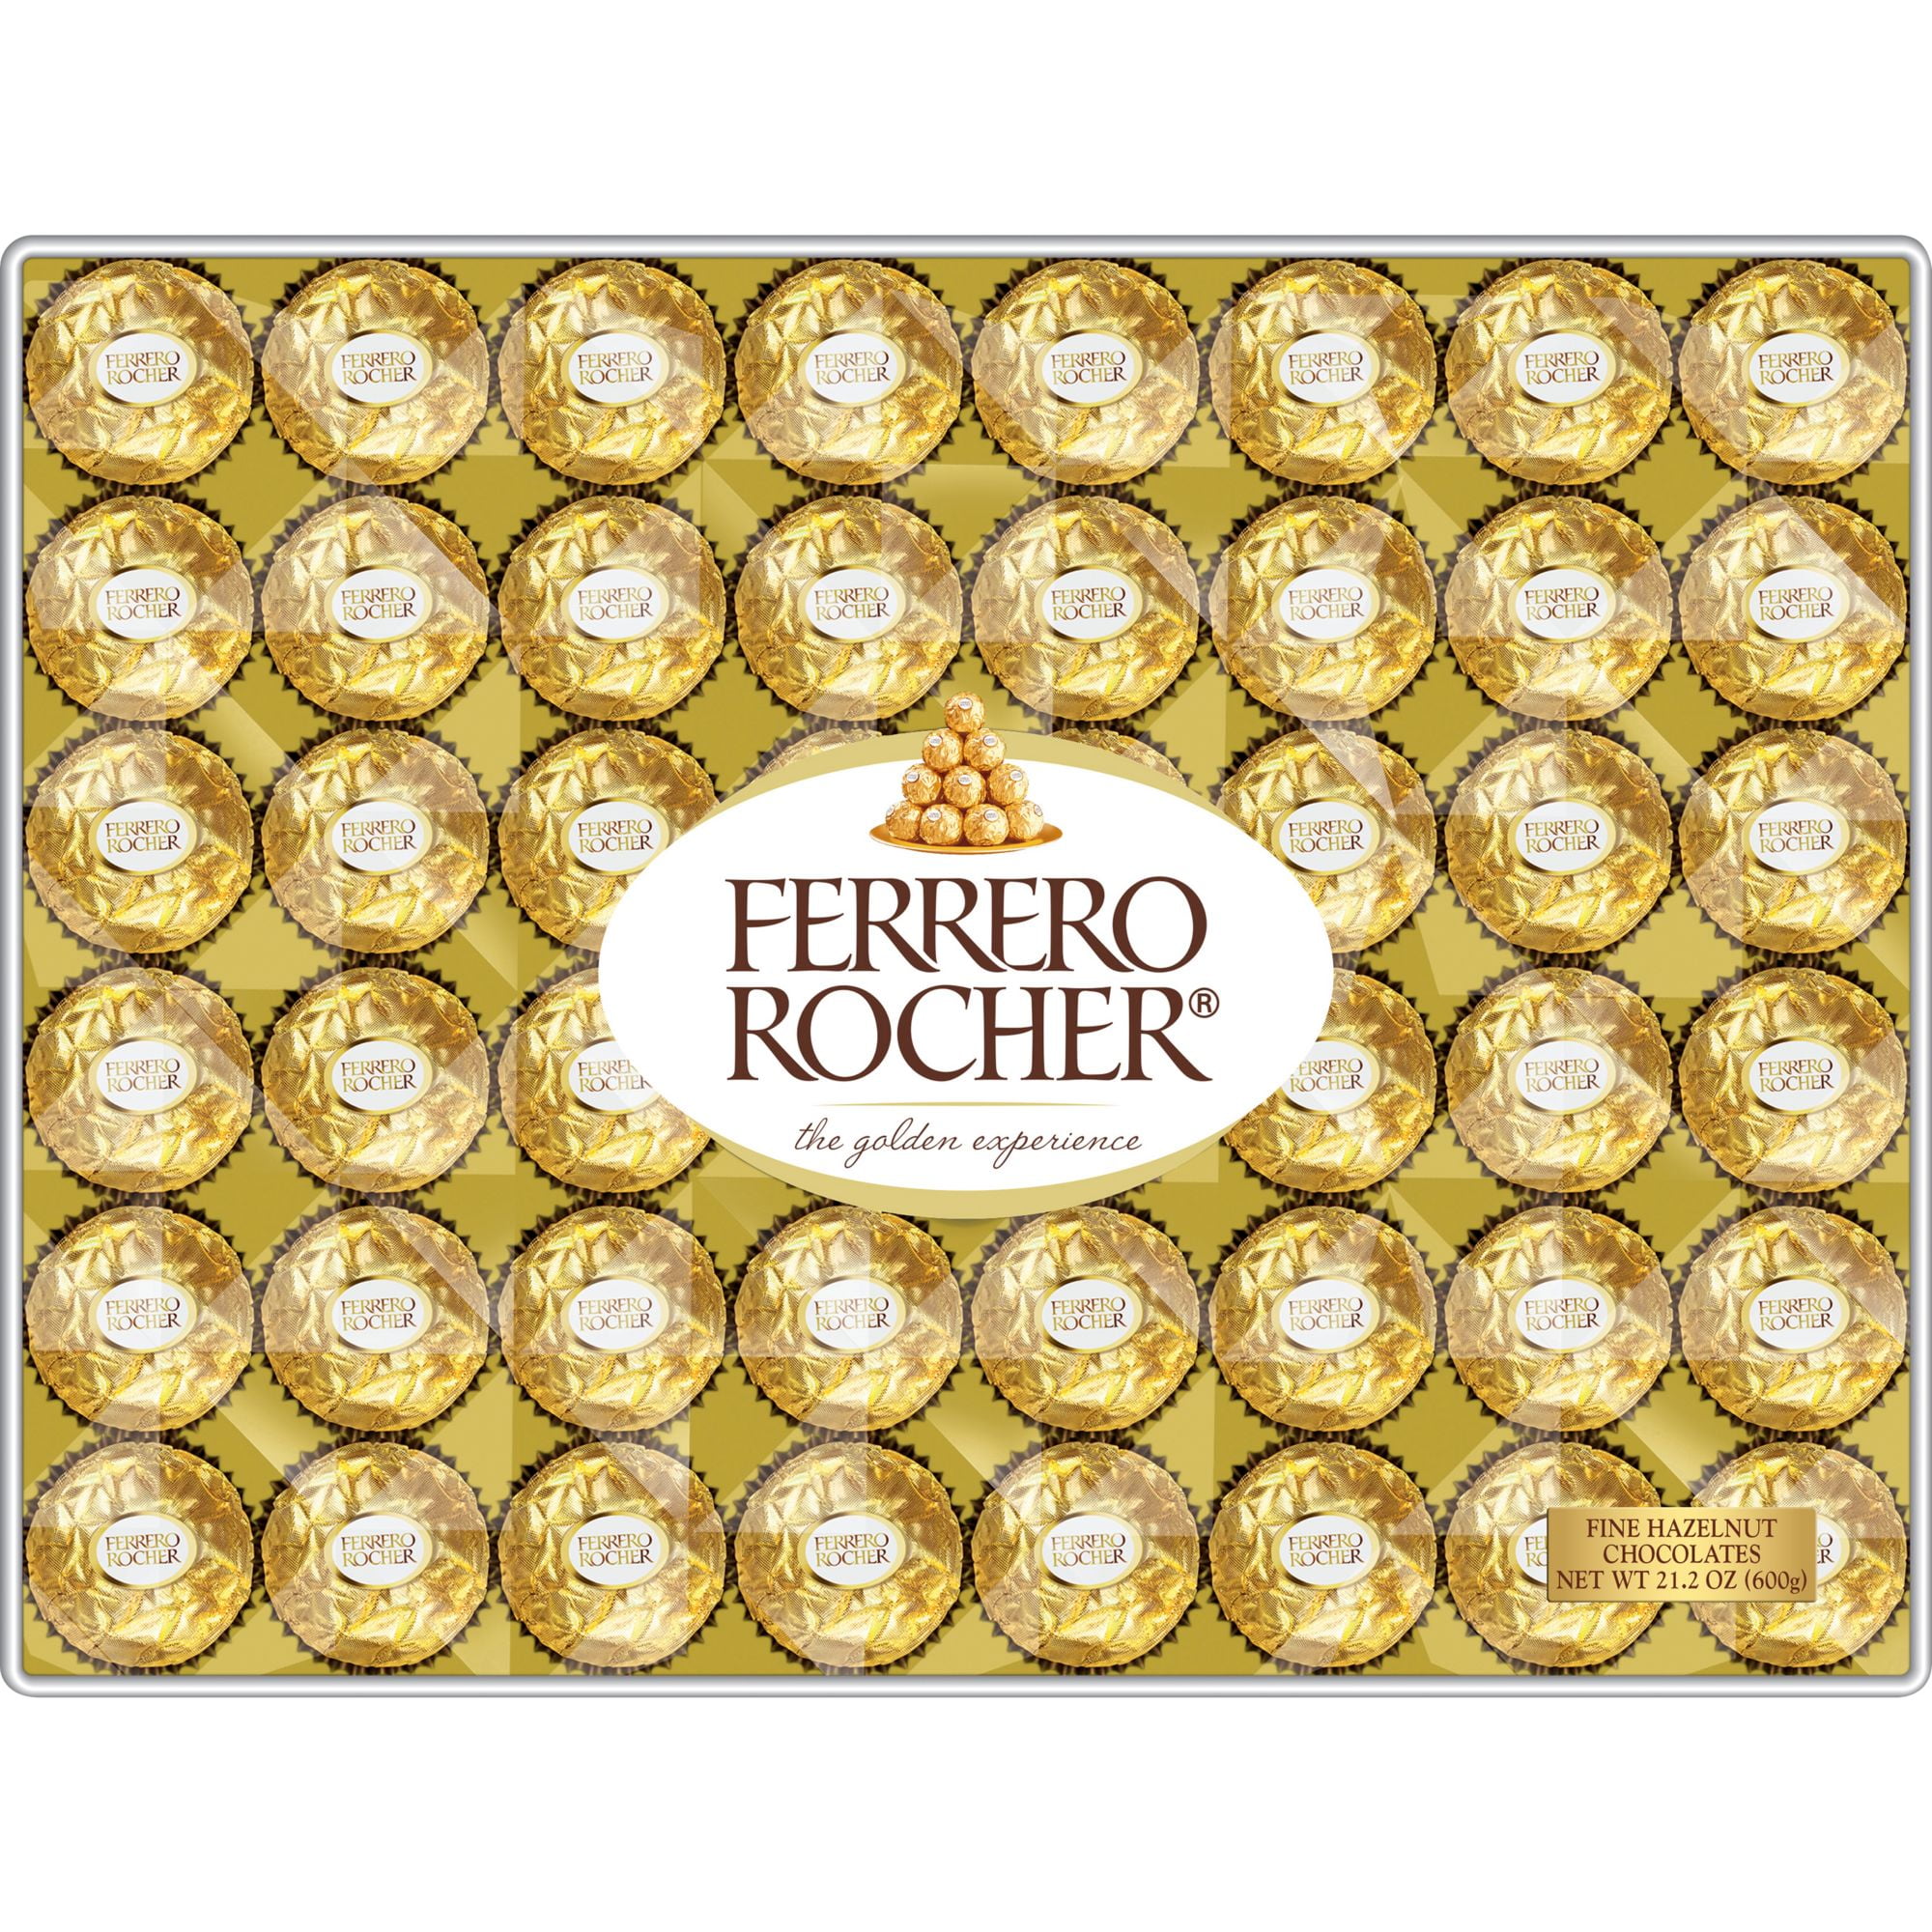 Ferrero Rocher Fine Hazelnut Chocolates Count Walmart